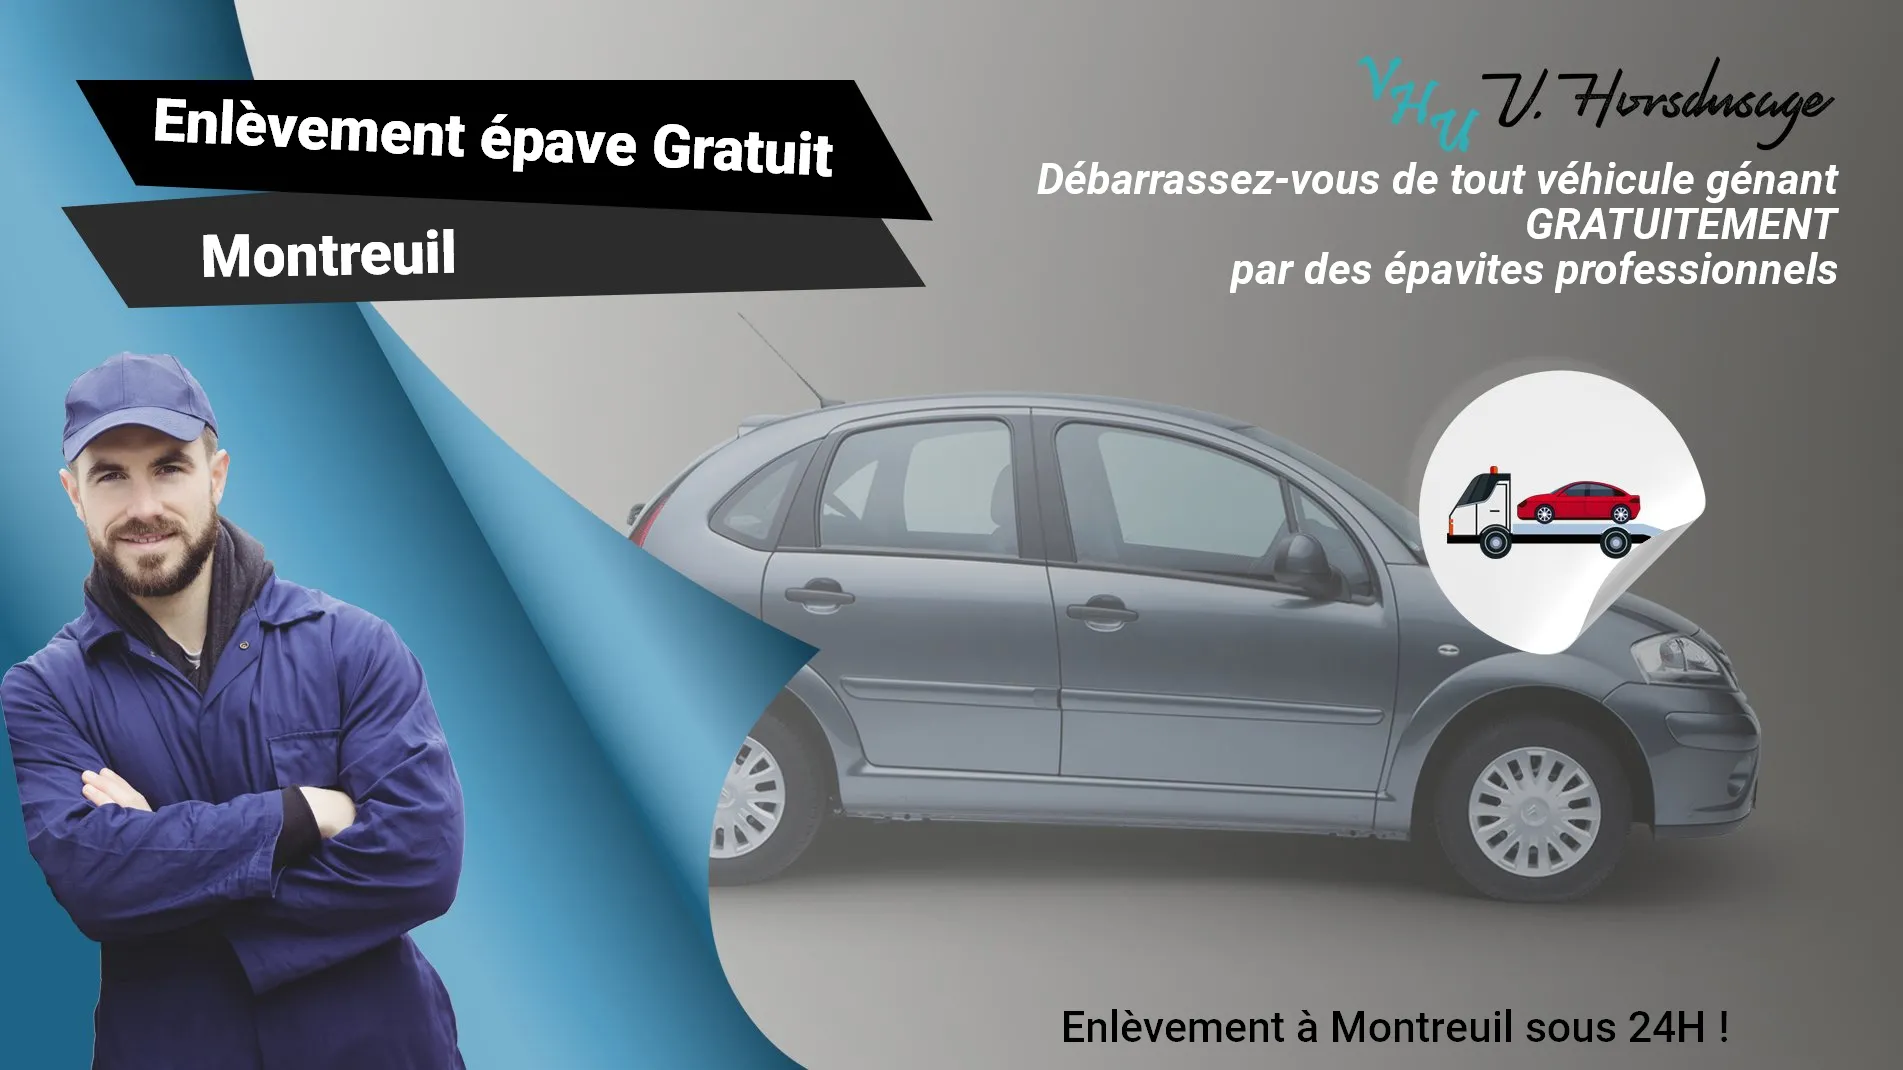 Pour un enlèvement gratuit à Montreuil, contactez nos épavistes agréé VHU